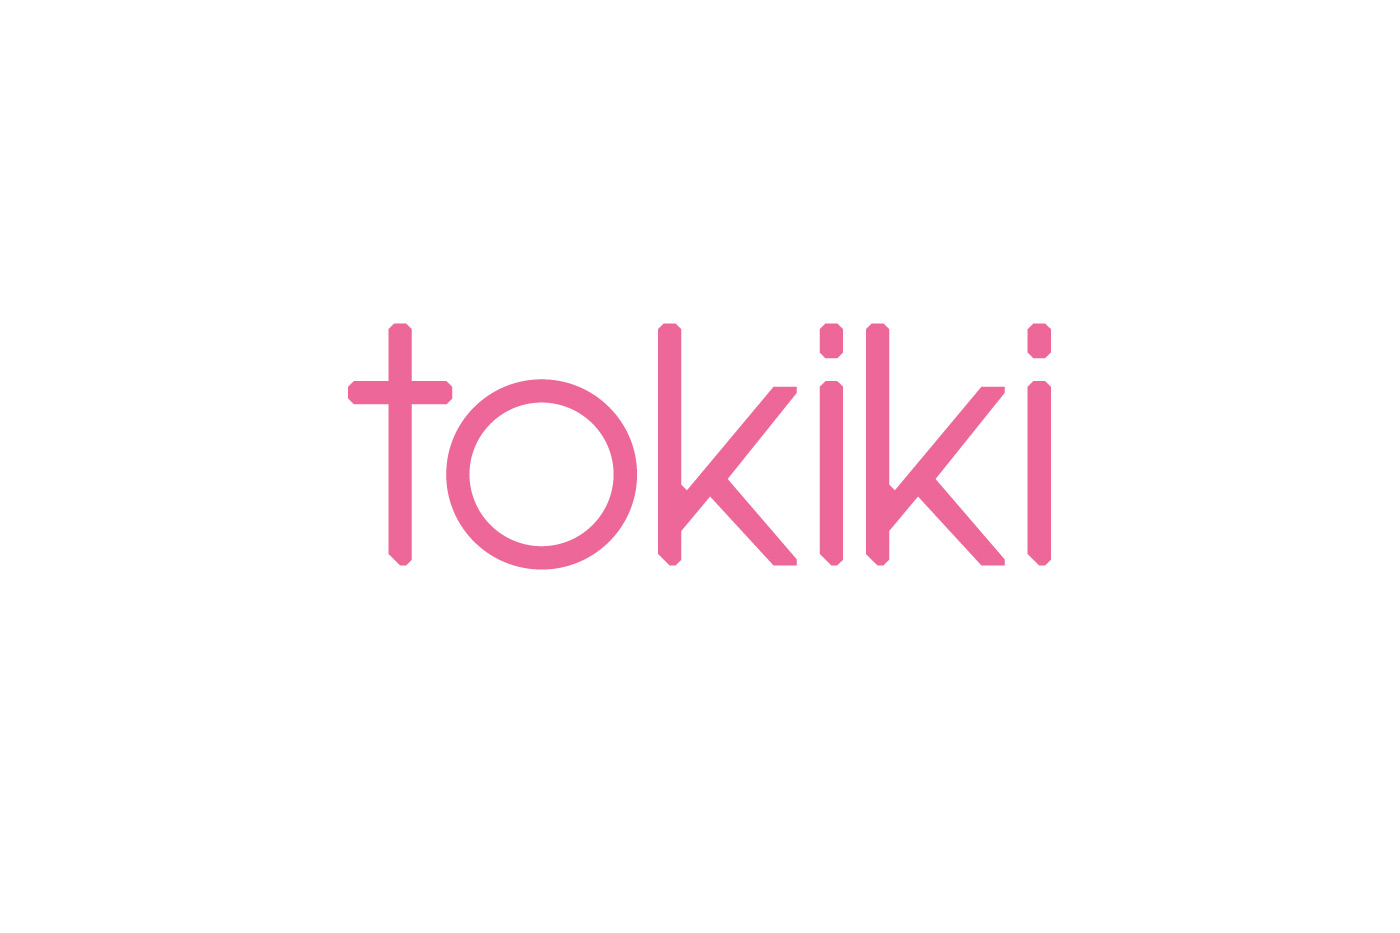 Tokiki branding